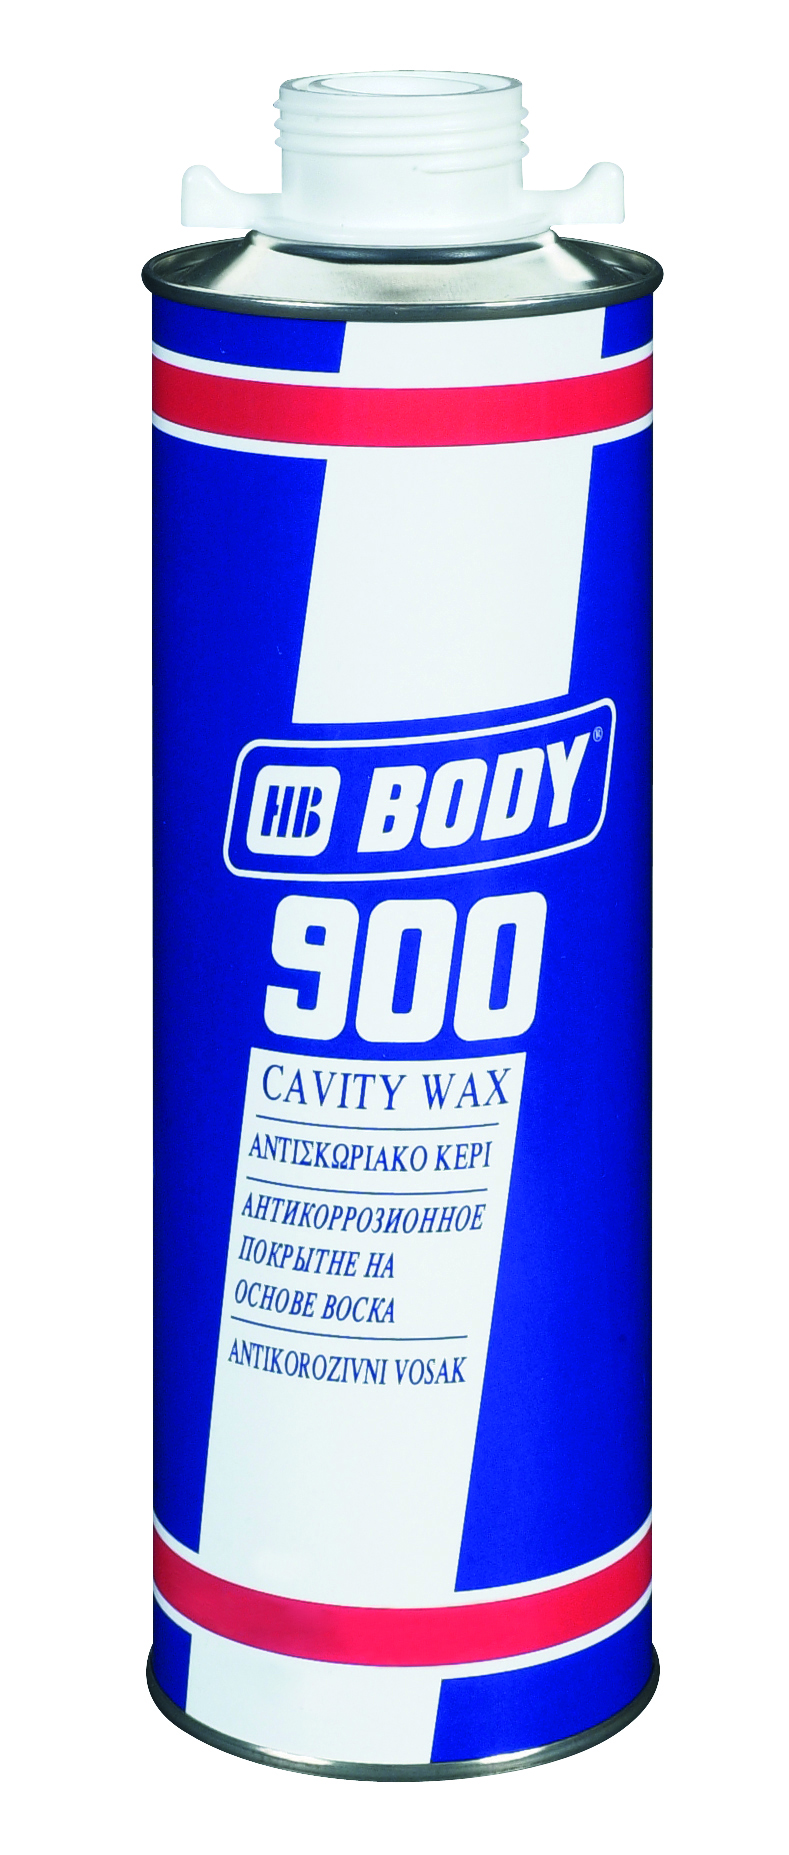 HB BODY Body 900 Cavity Wax Priesvitná,1L